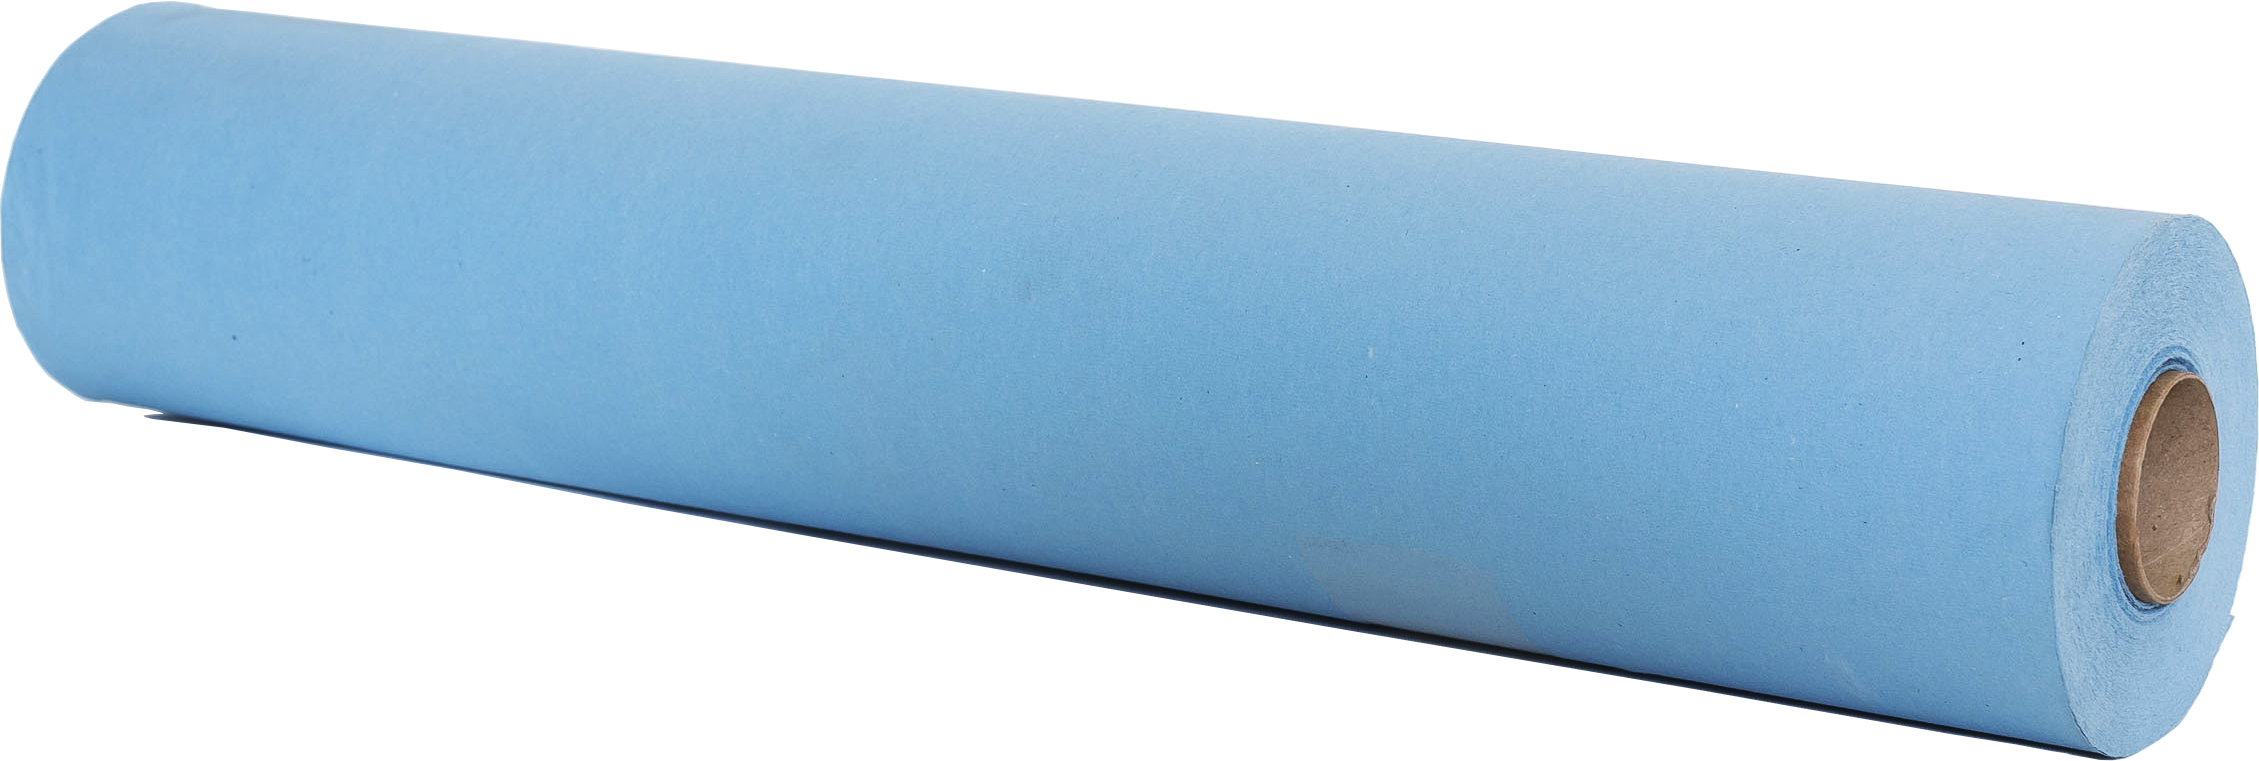 Papel Camilla Tissue 1/c Celulosa Precorte 40cm - Fisioportunity: Tu tienda  online